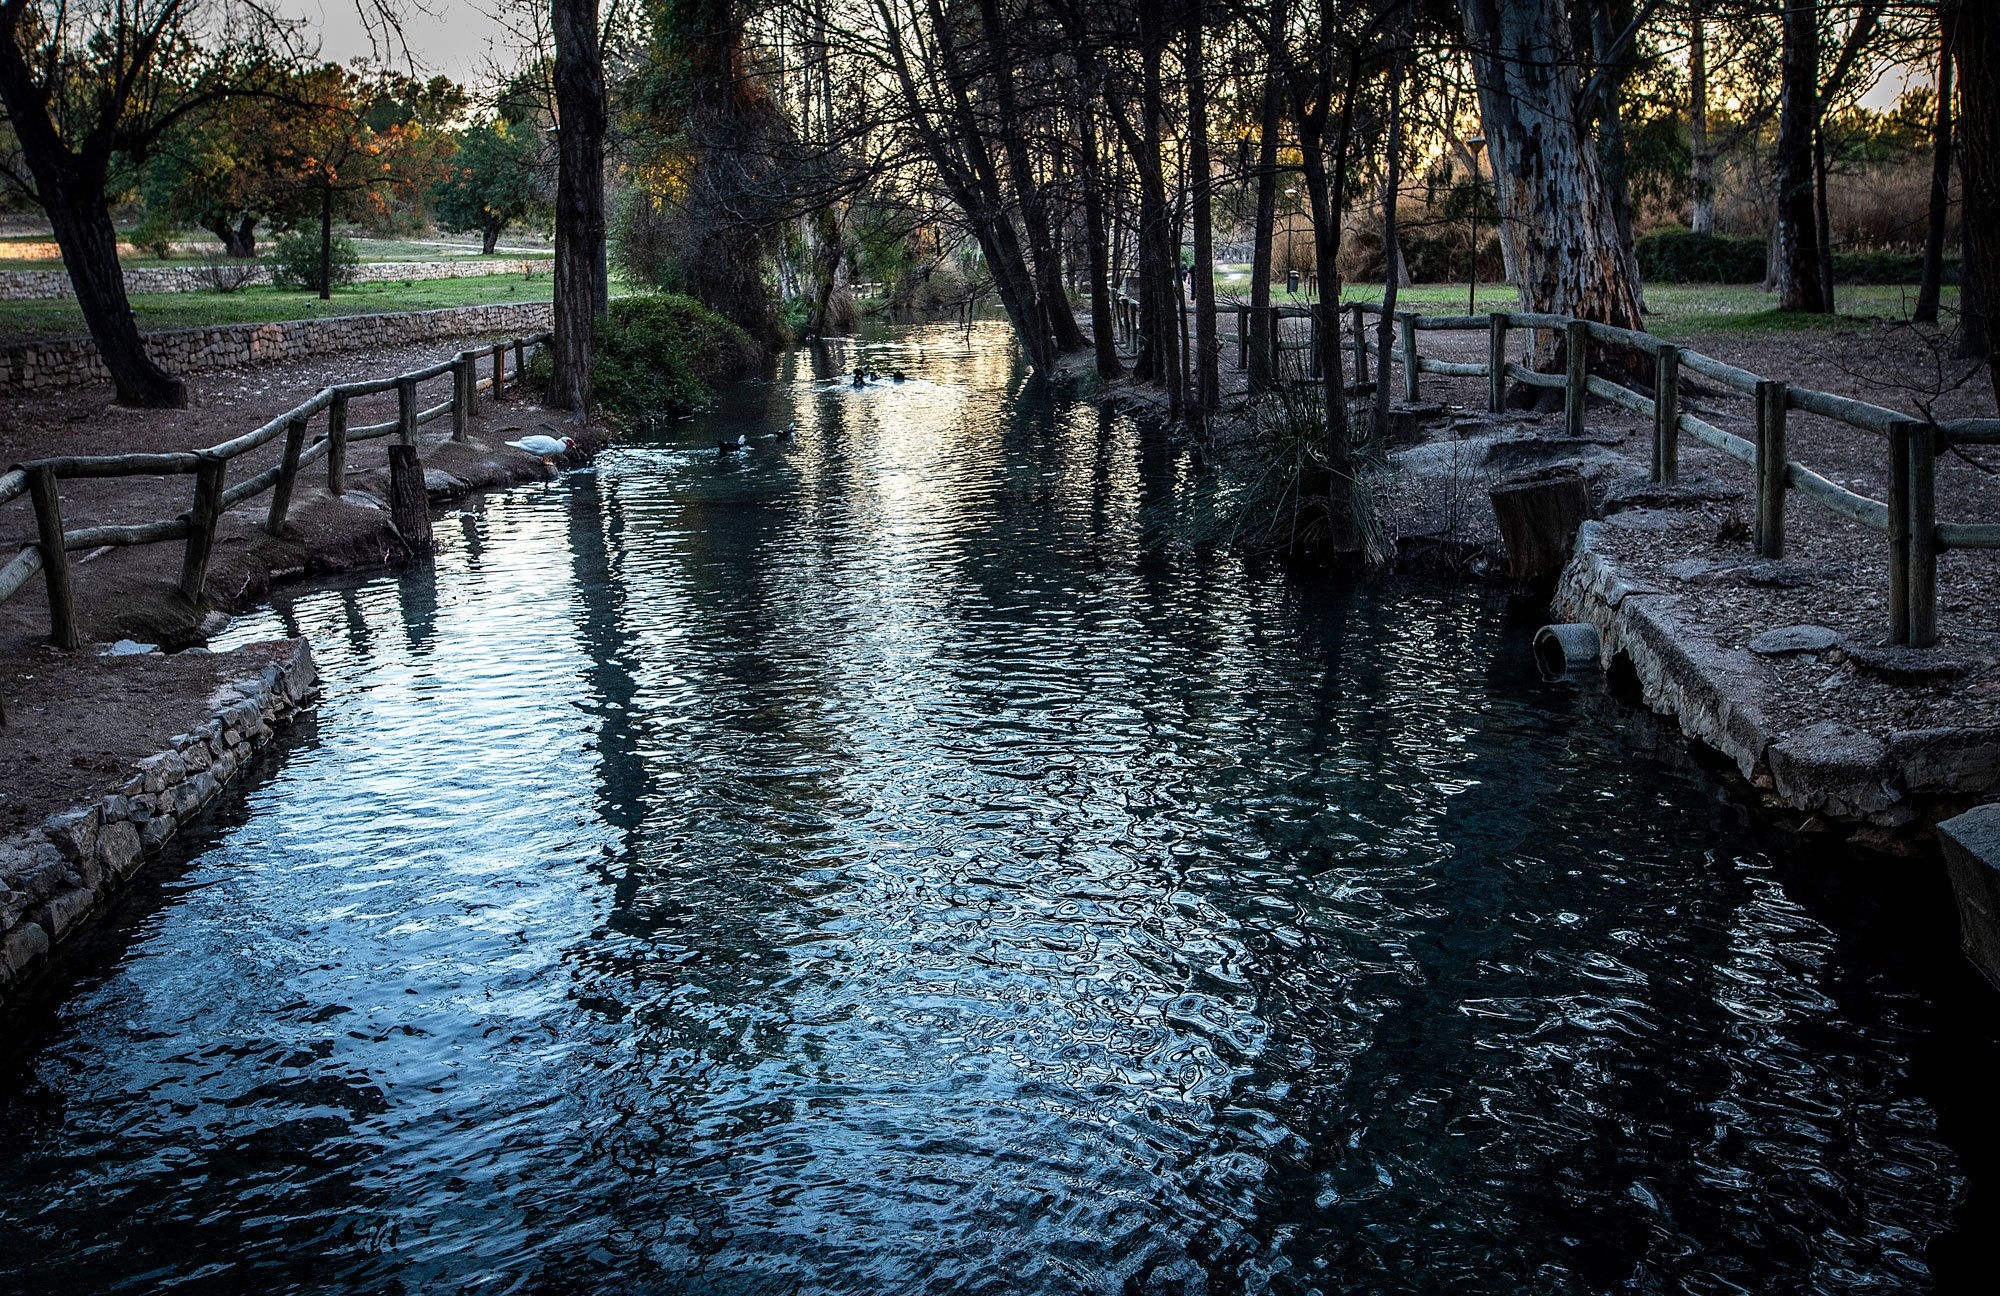 Turisme Llíria - Parc de Sant Vicent